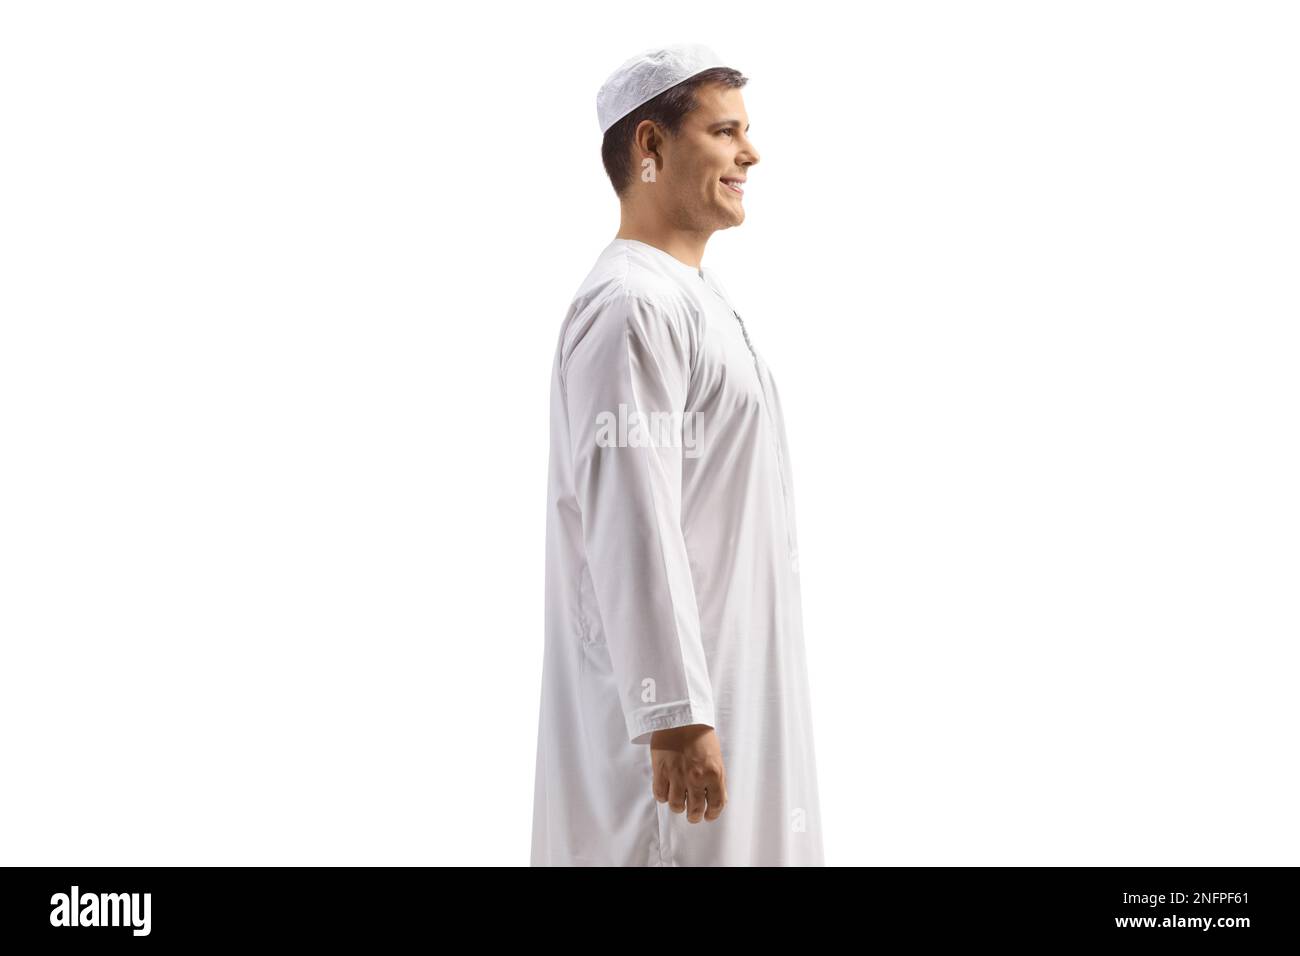 Immagine di un giovane uomo in abiti etnici bianchi isolati su sfondo bianco Foto Stock